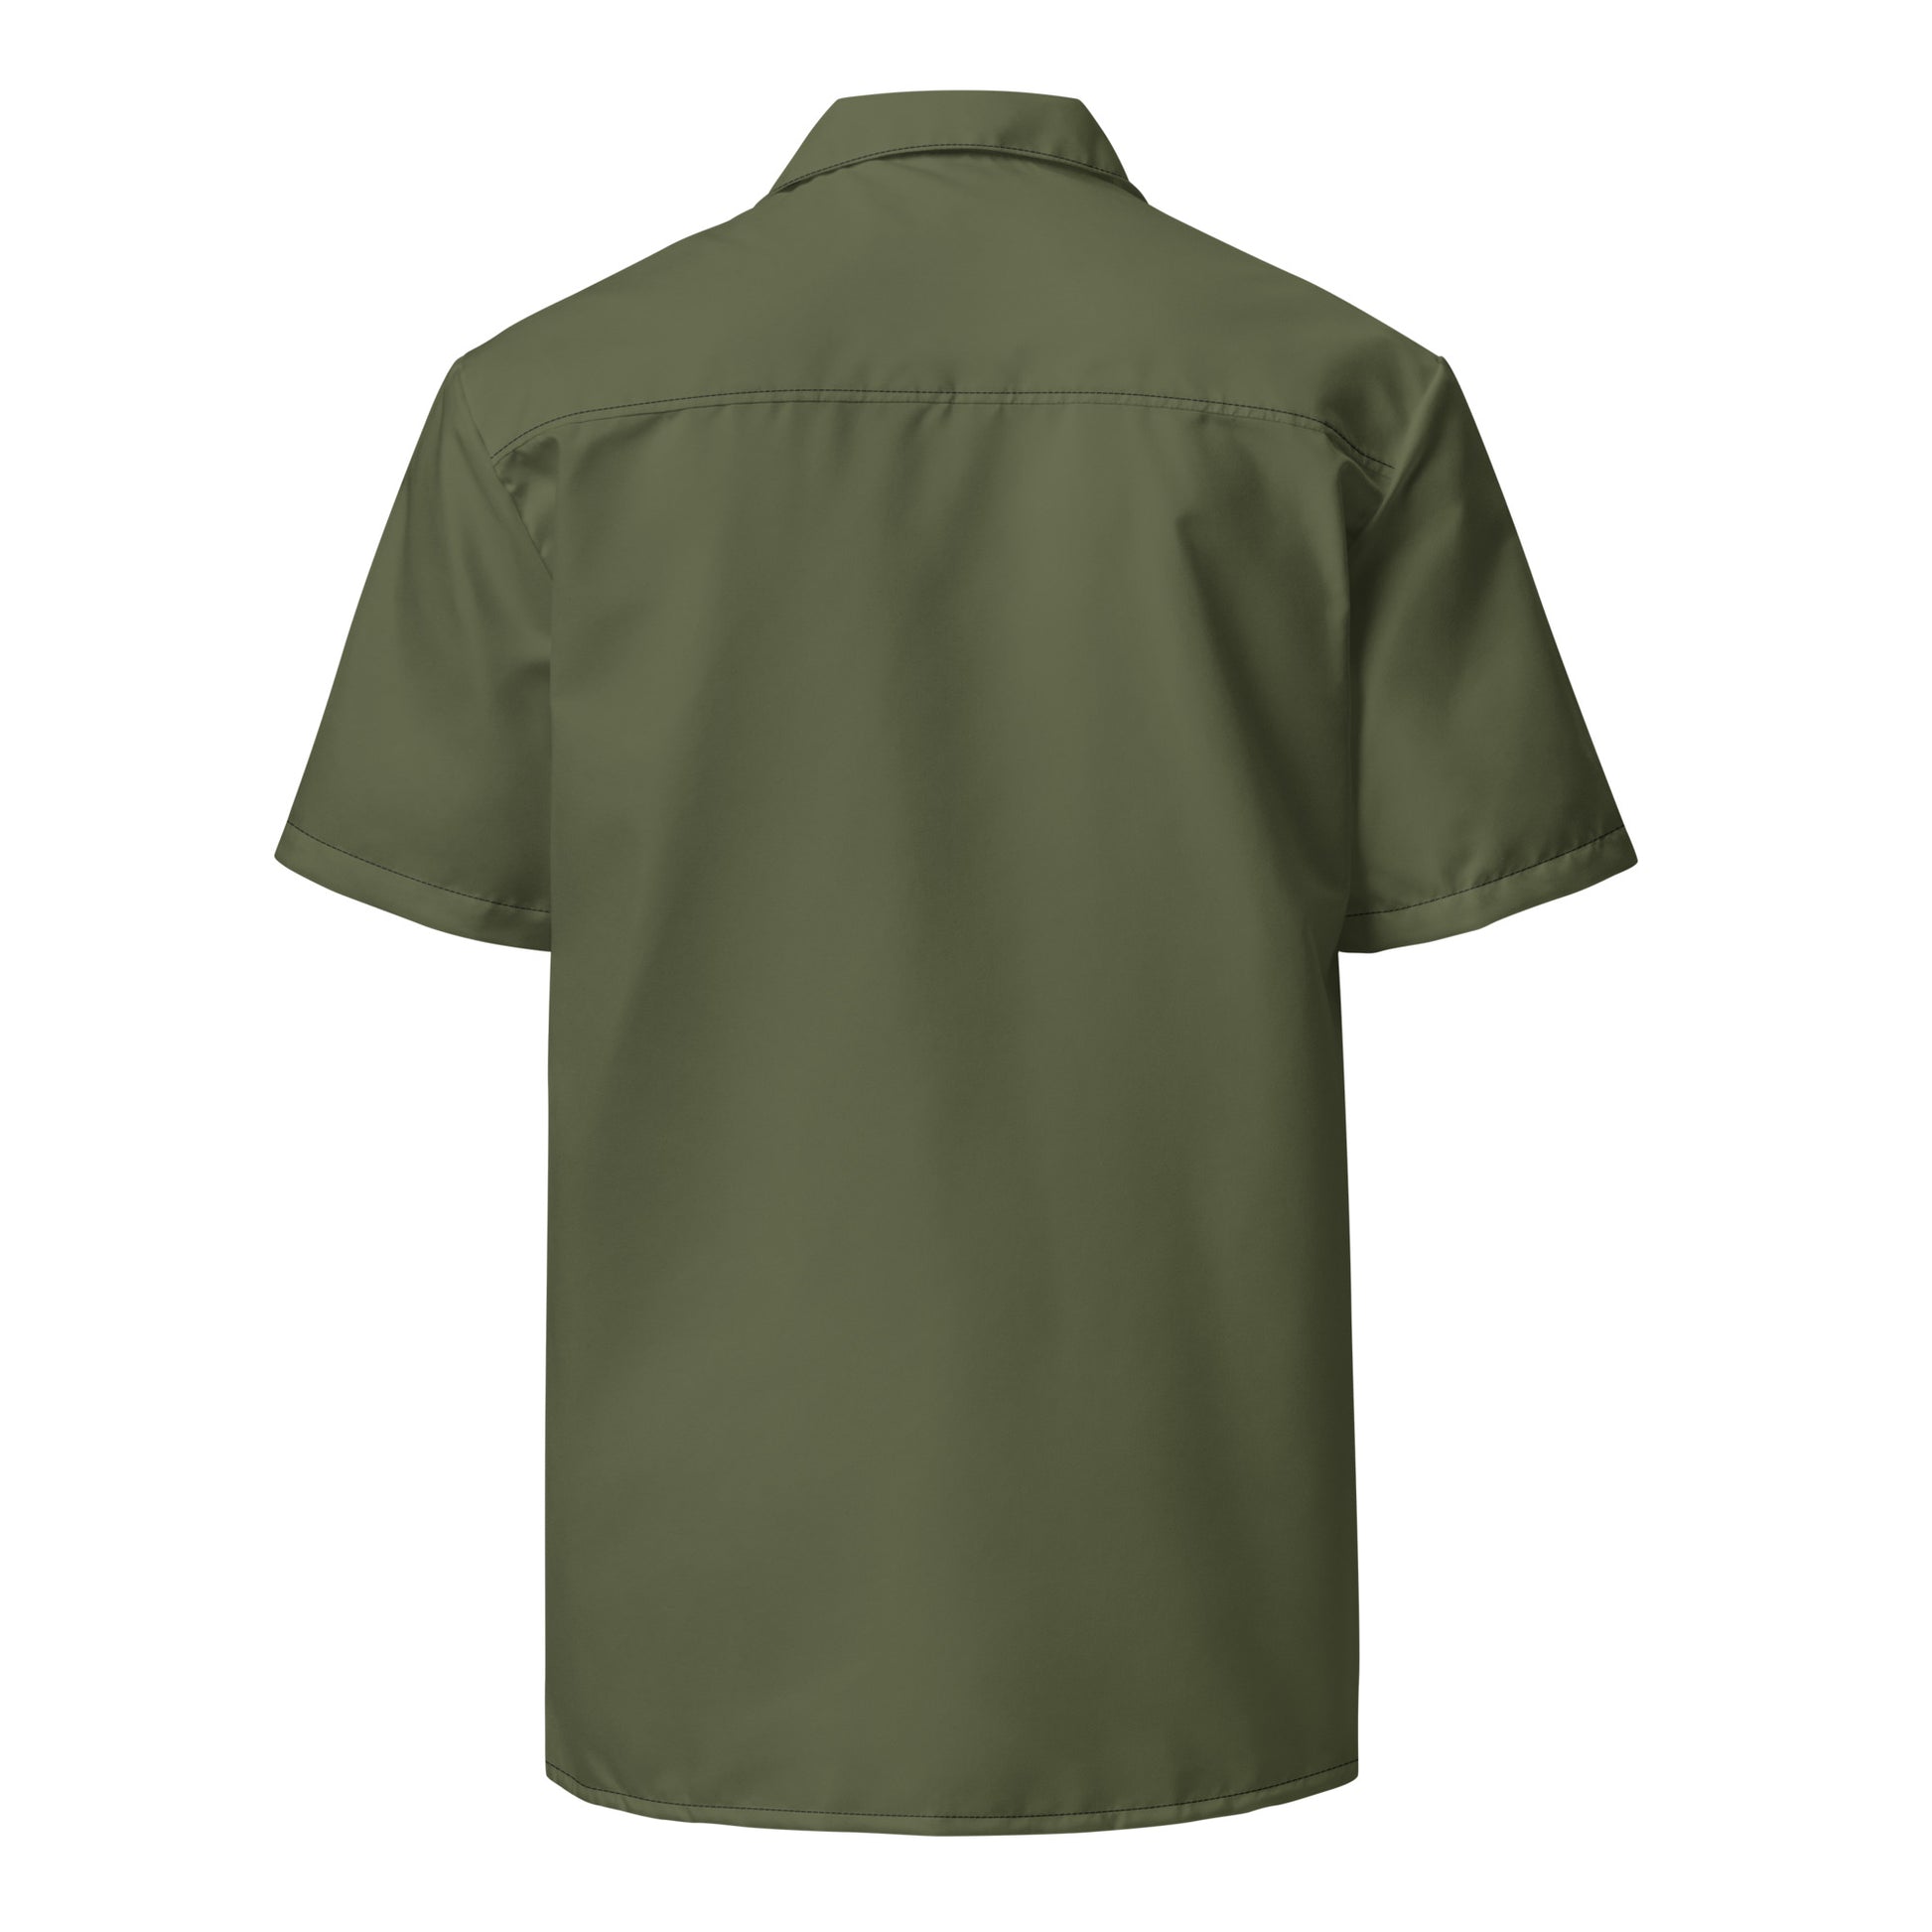 Humble Sportswear, men's Color Match green lightweight button shirt casual